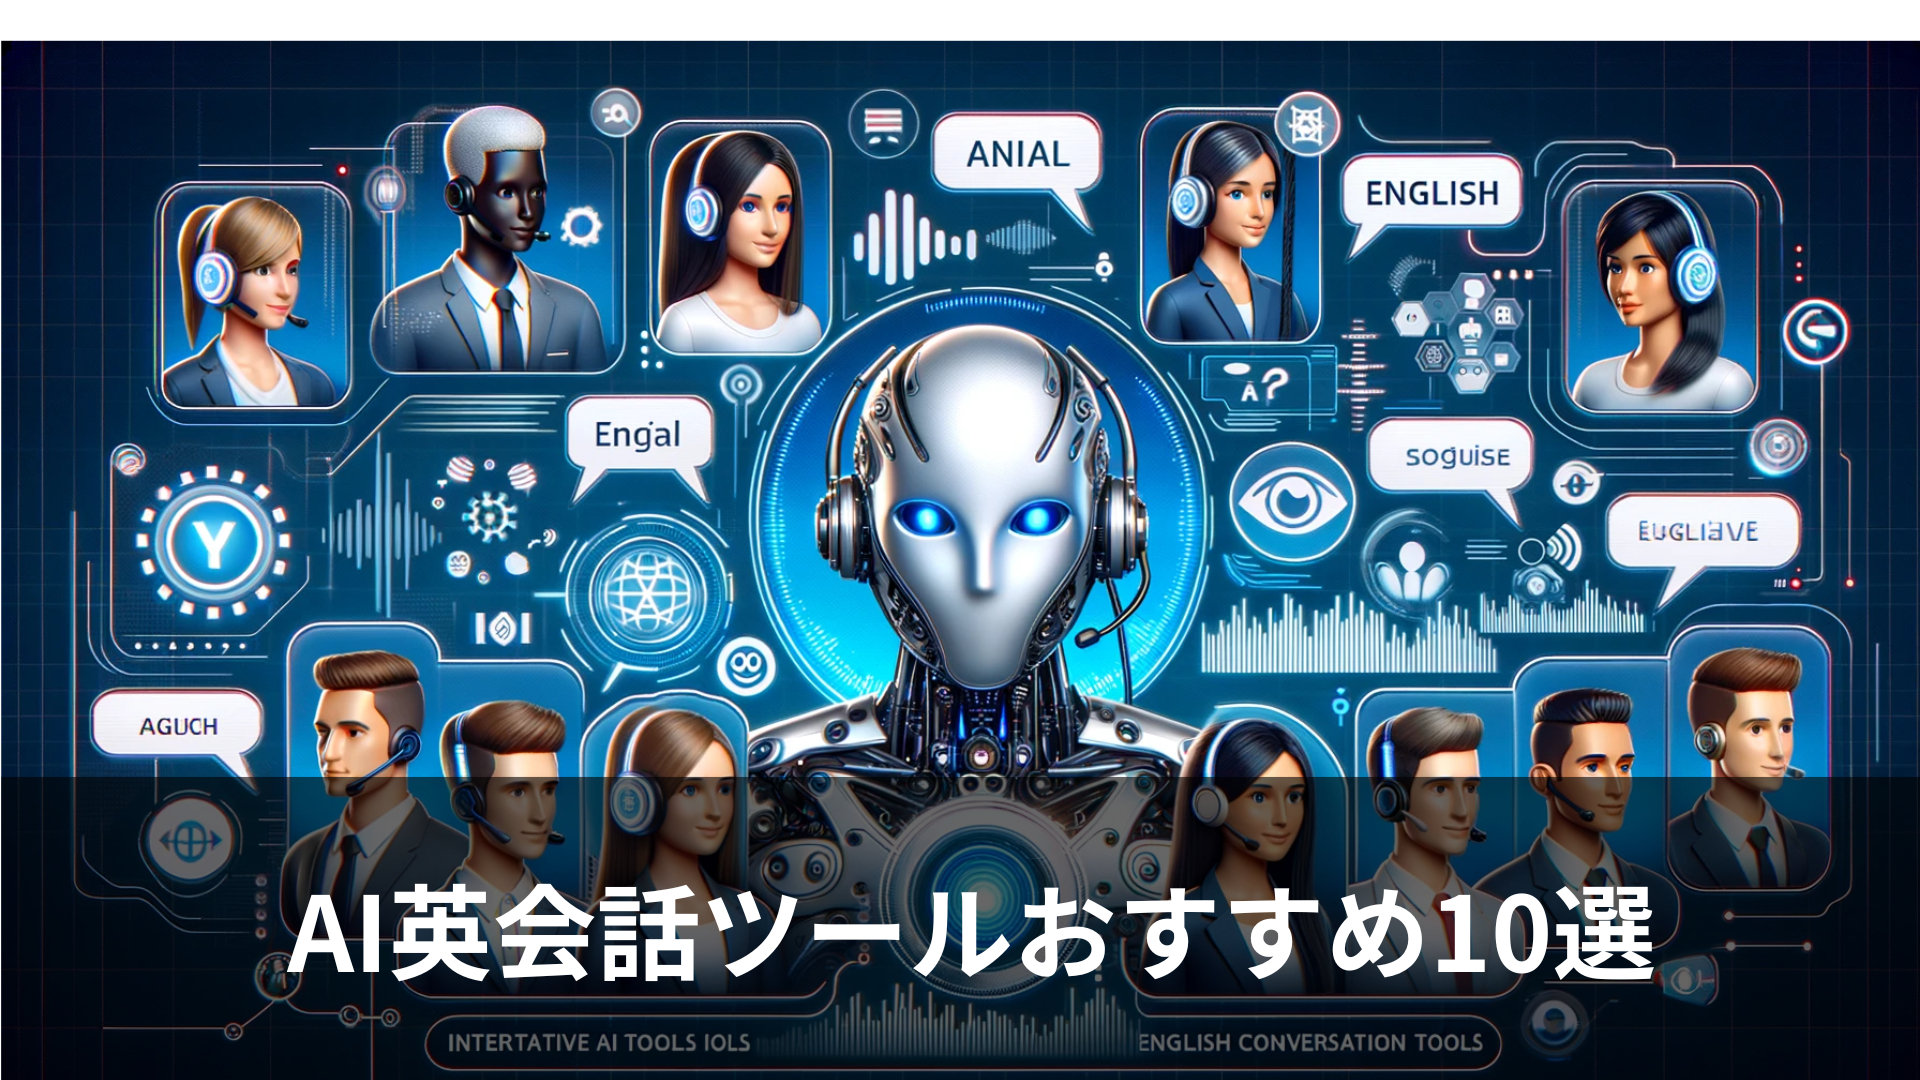 AIで実践的な英会話が学べるおすすめのAI英会話ツール10選